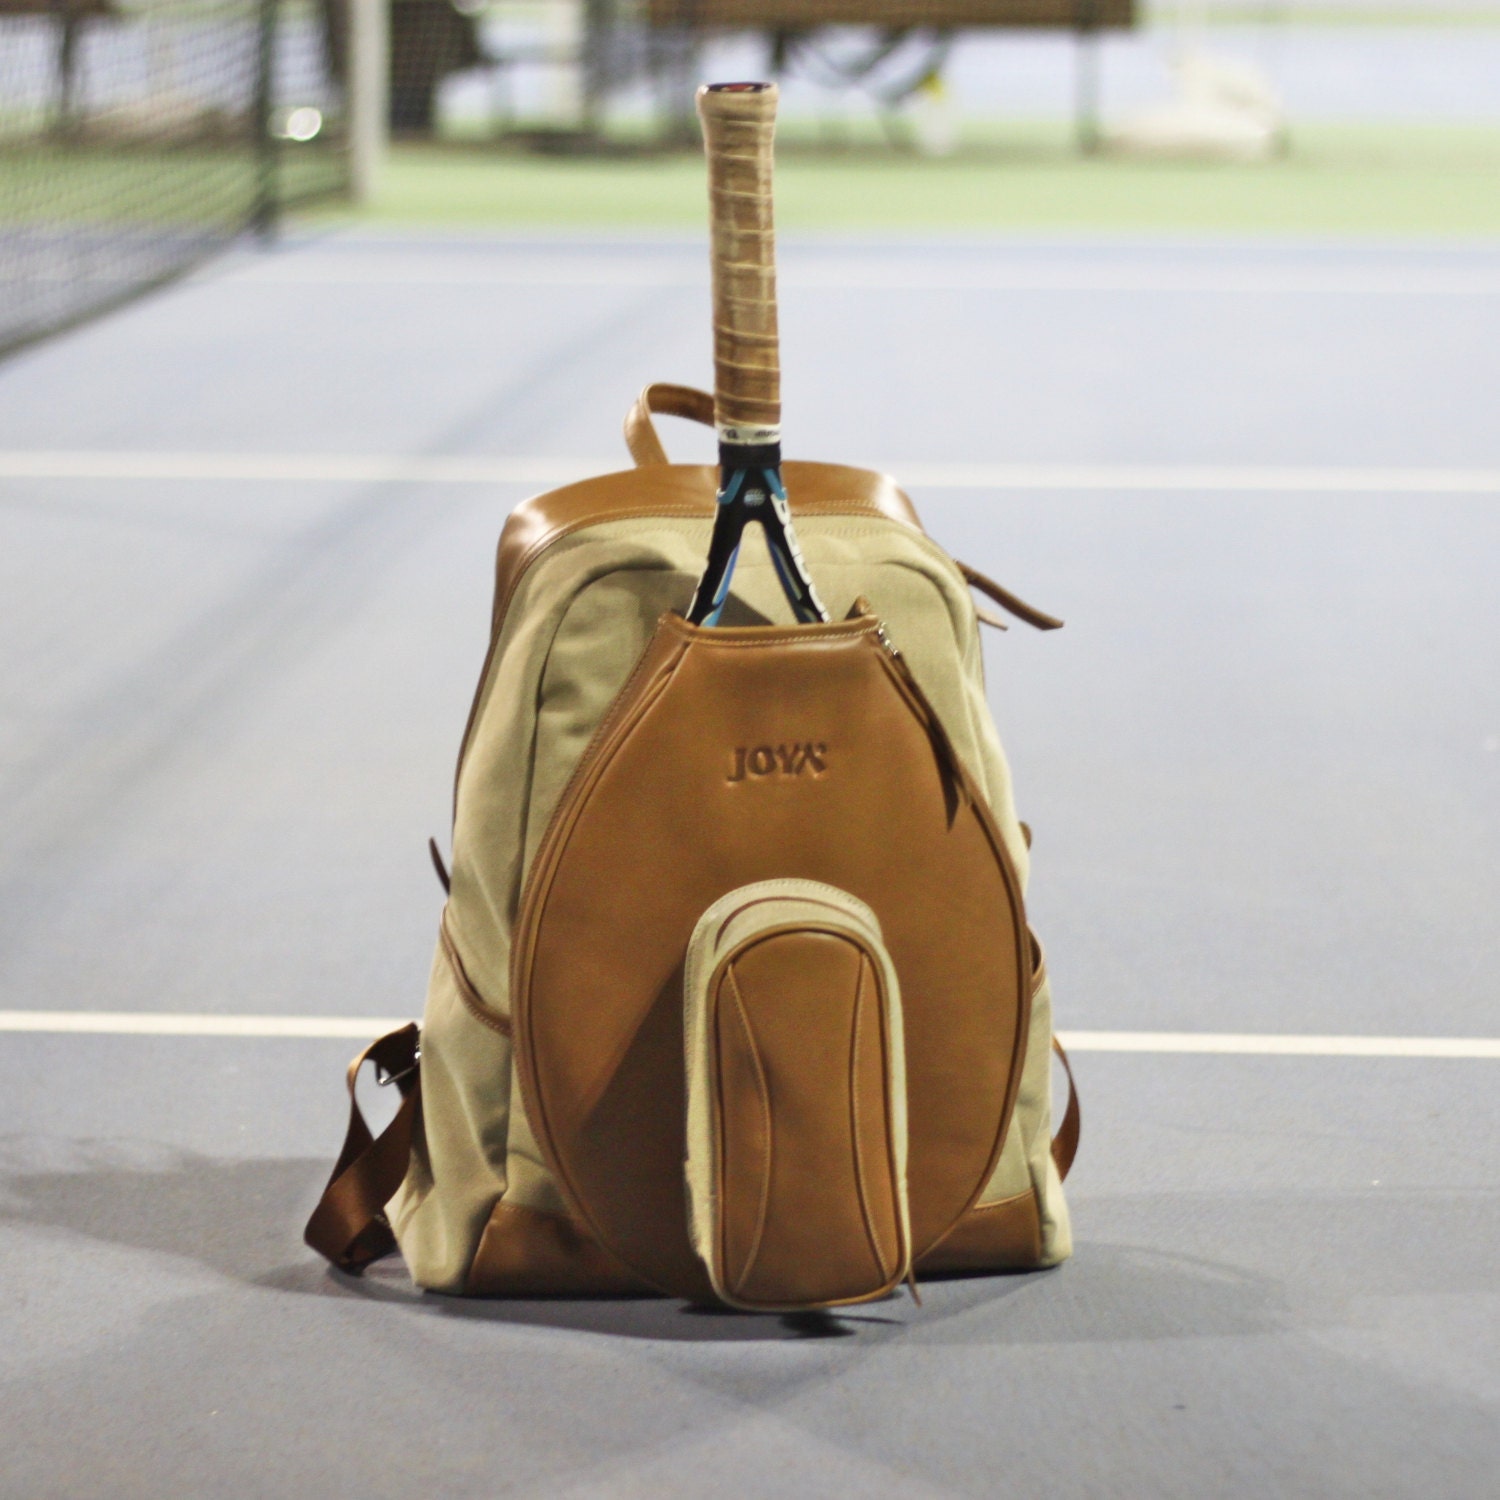 Tennis Tote Bag, Tennis Racket Bag, Pickleball Tote Bag - China